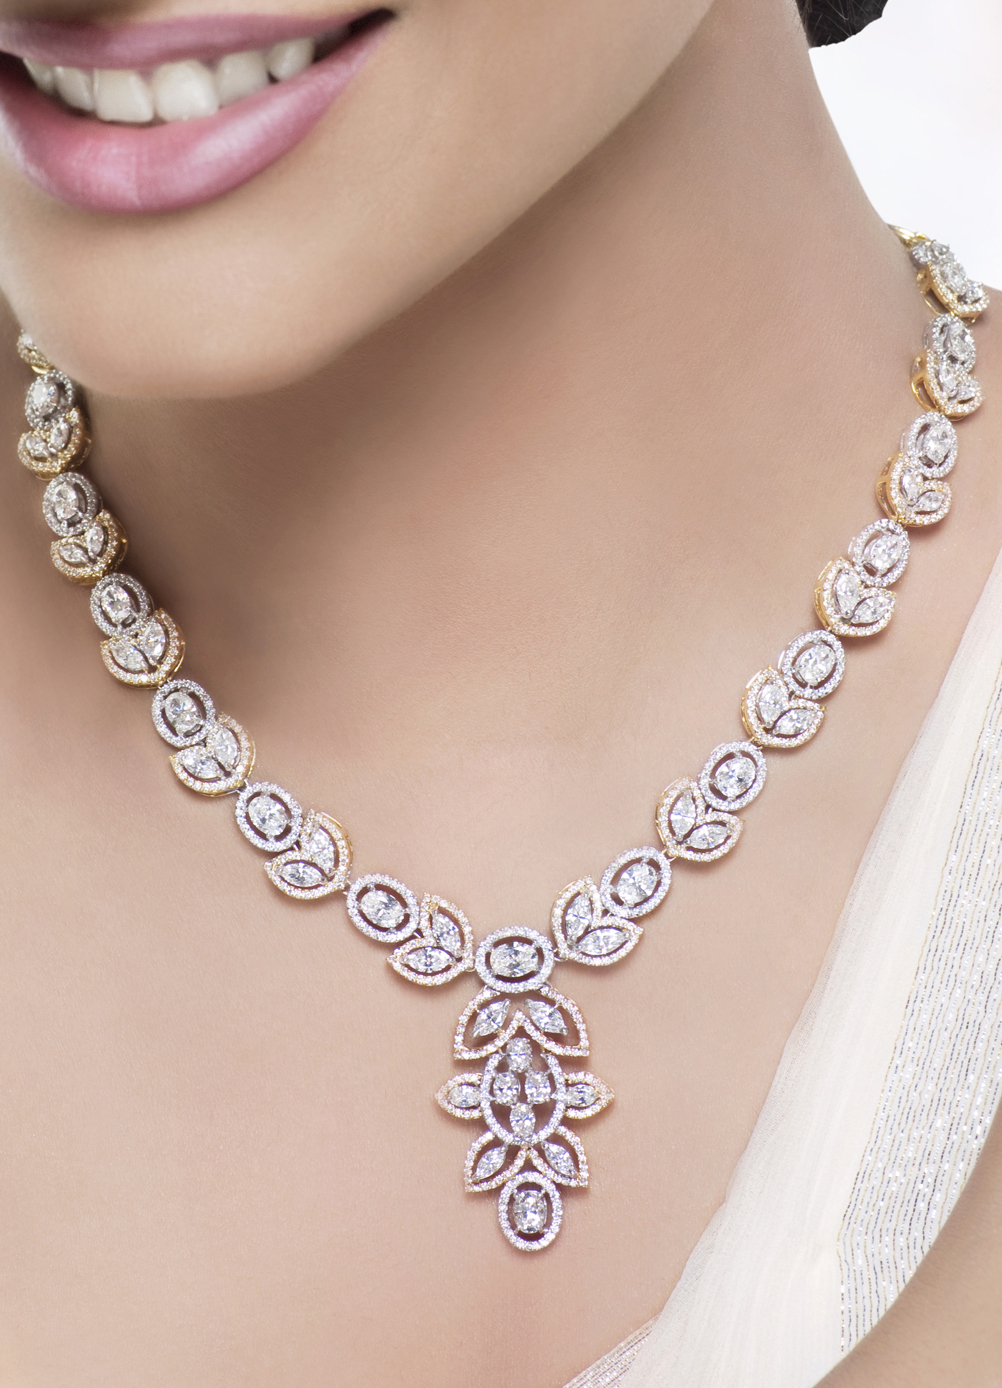 diamond necklace for women luxury jewelry | luxury women diamonds necklace great for bridal jewelry syfbiuz